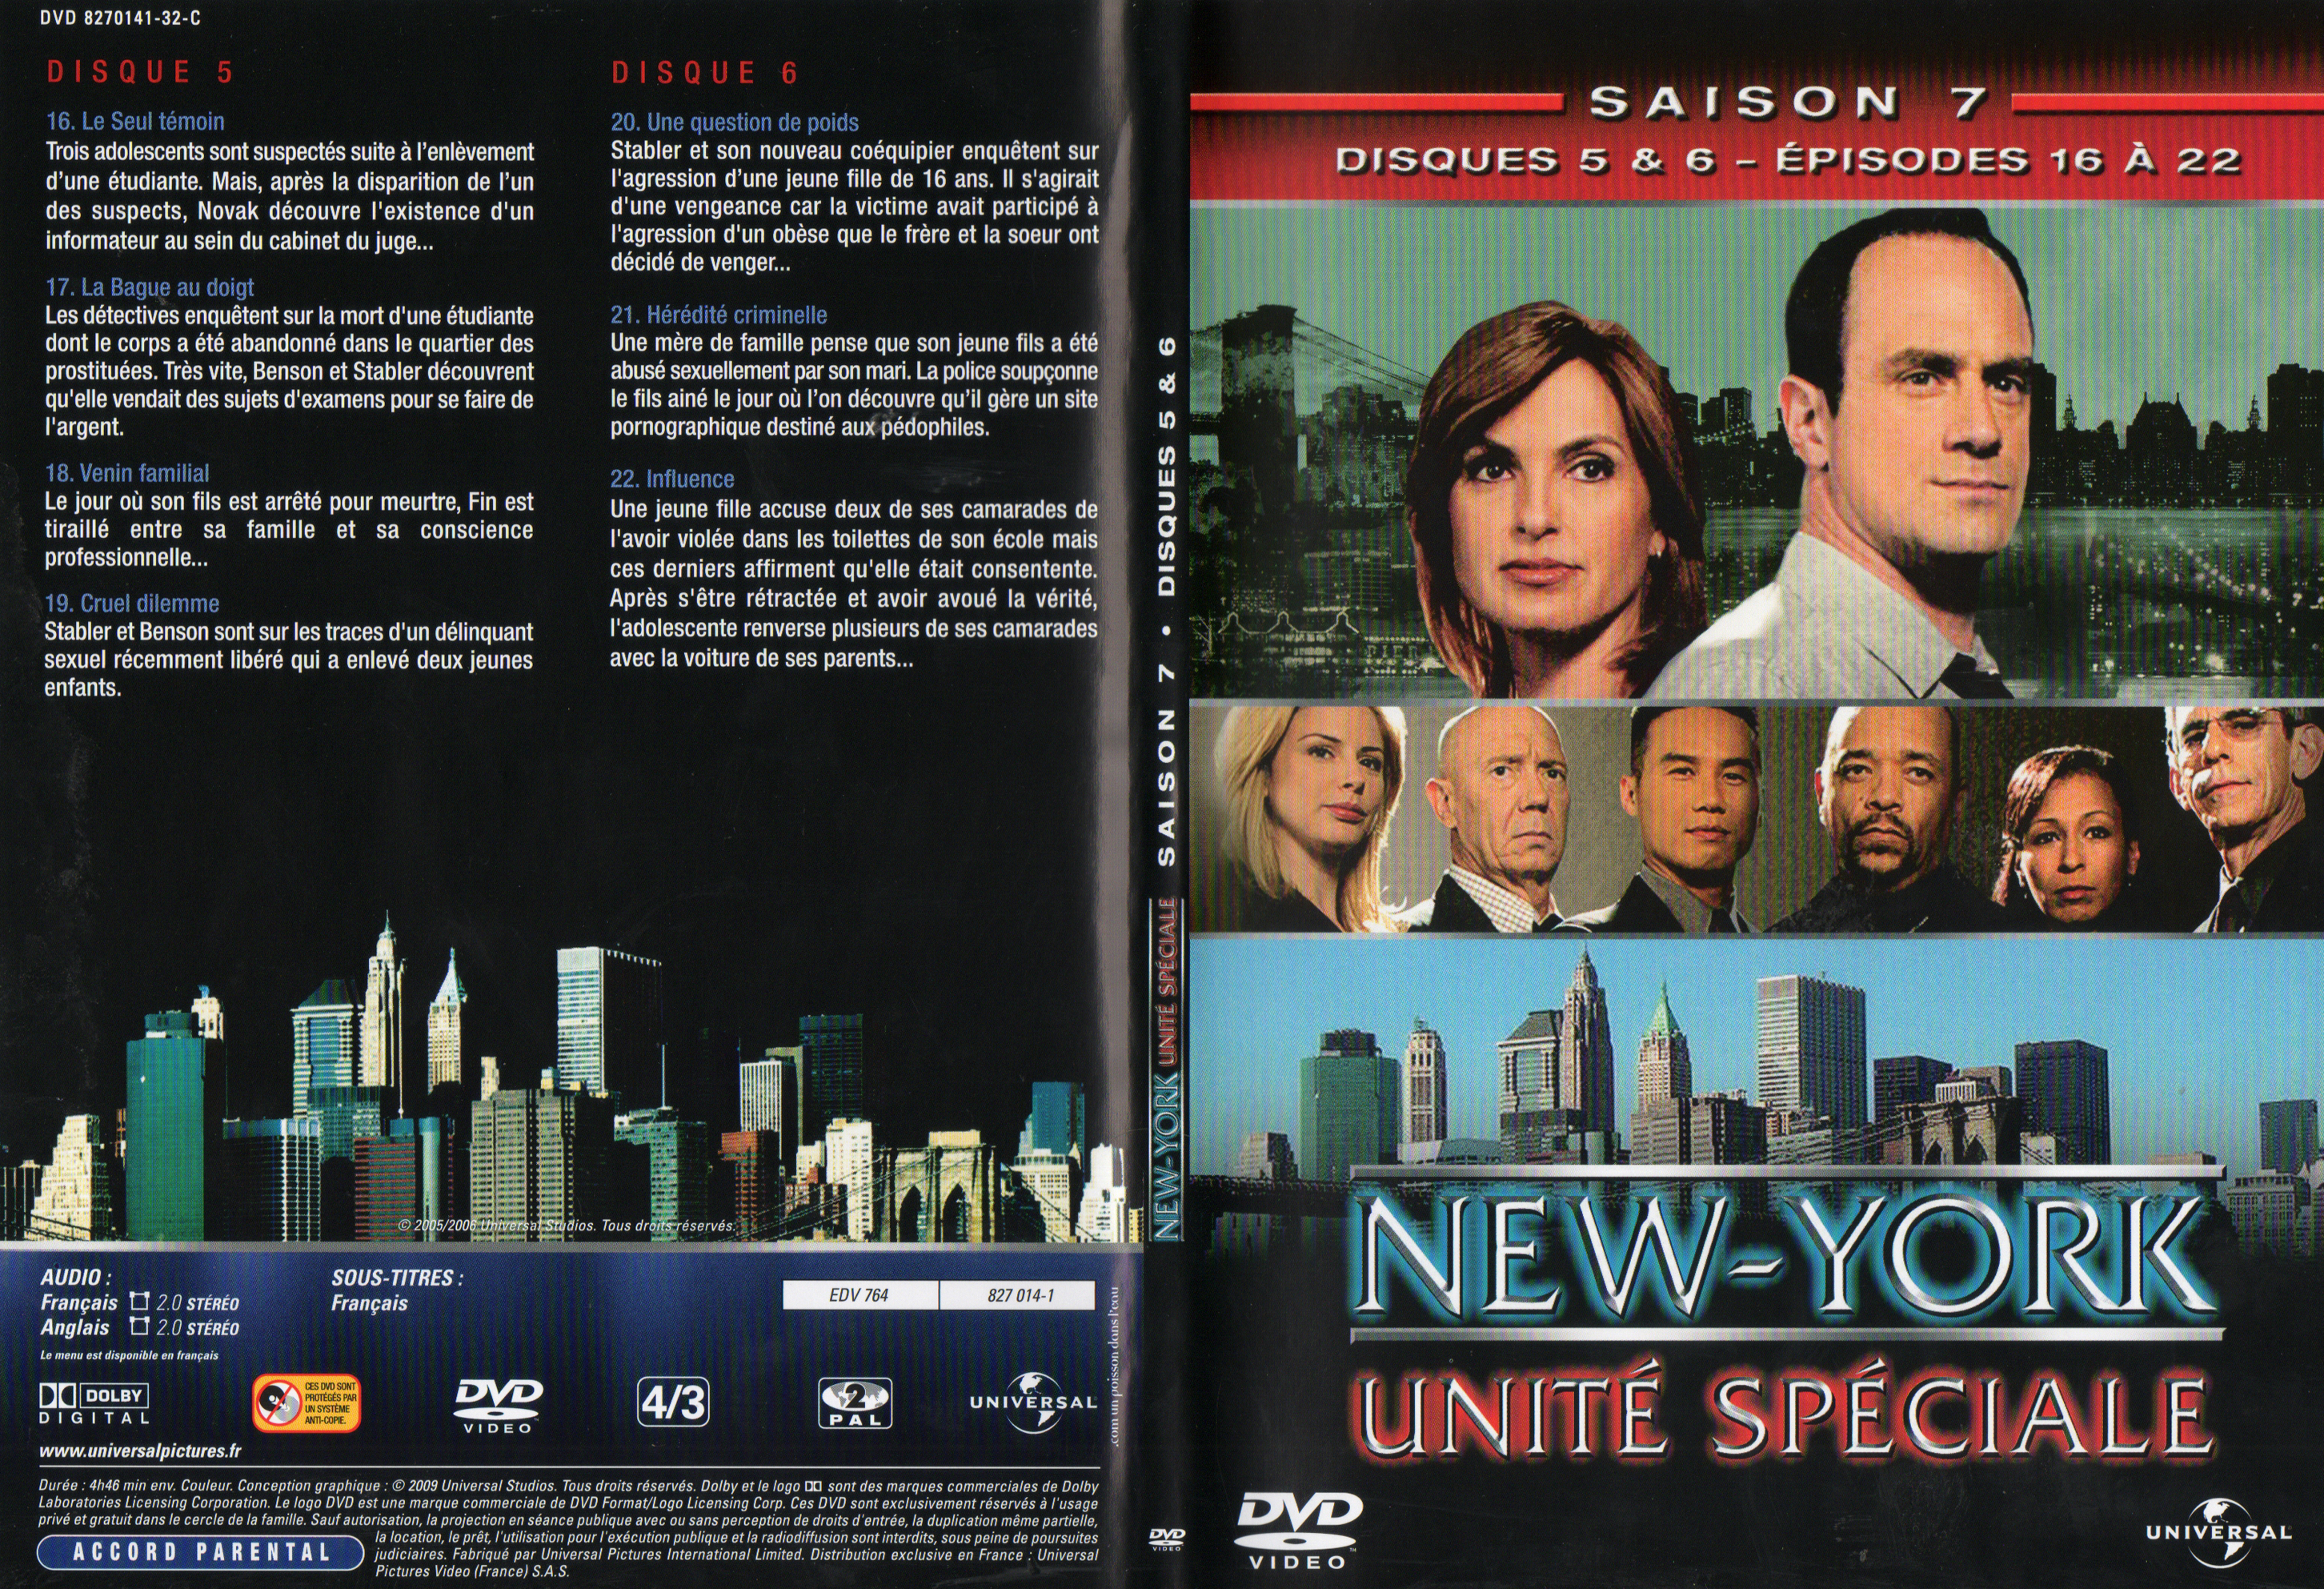 Jaquette DVD New York unit spciale saison 7 DVD 3